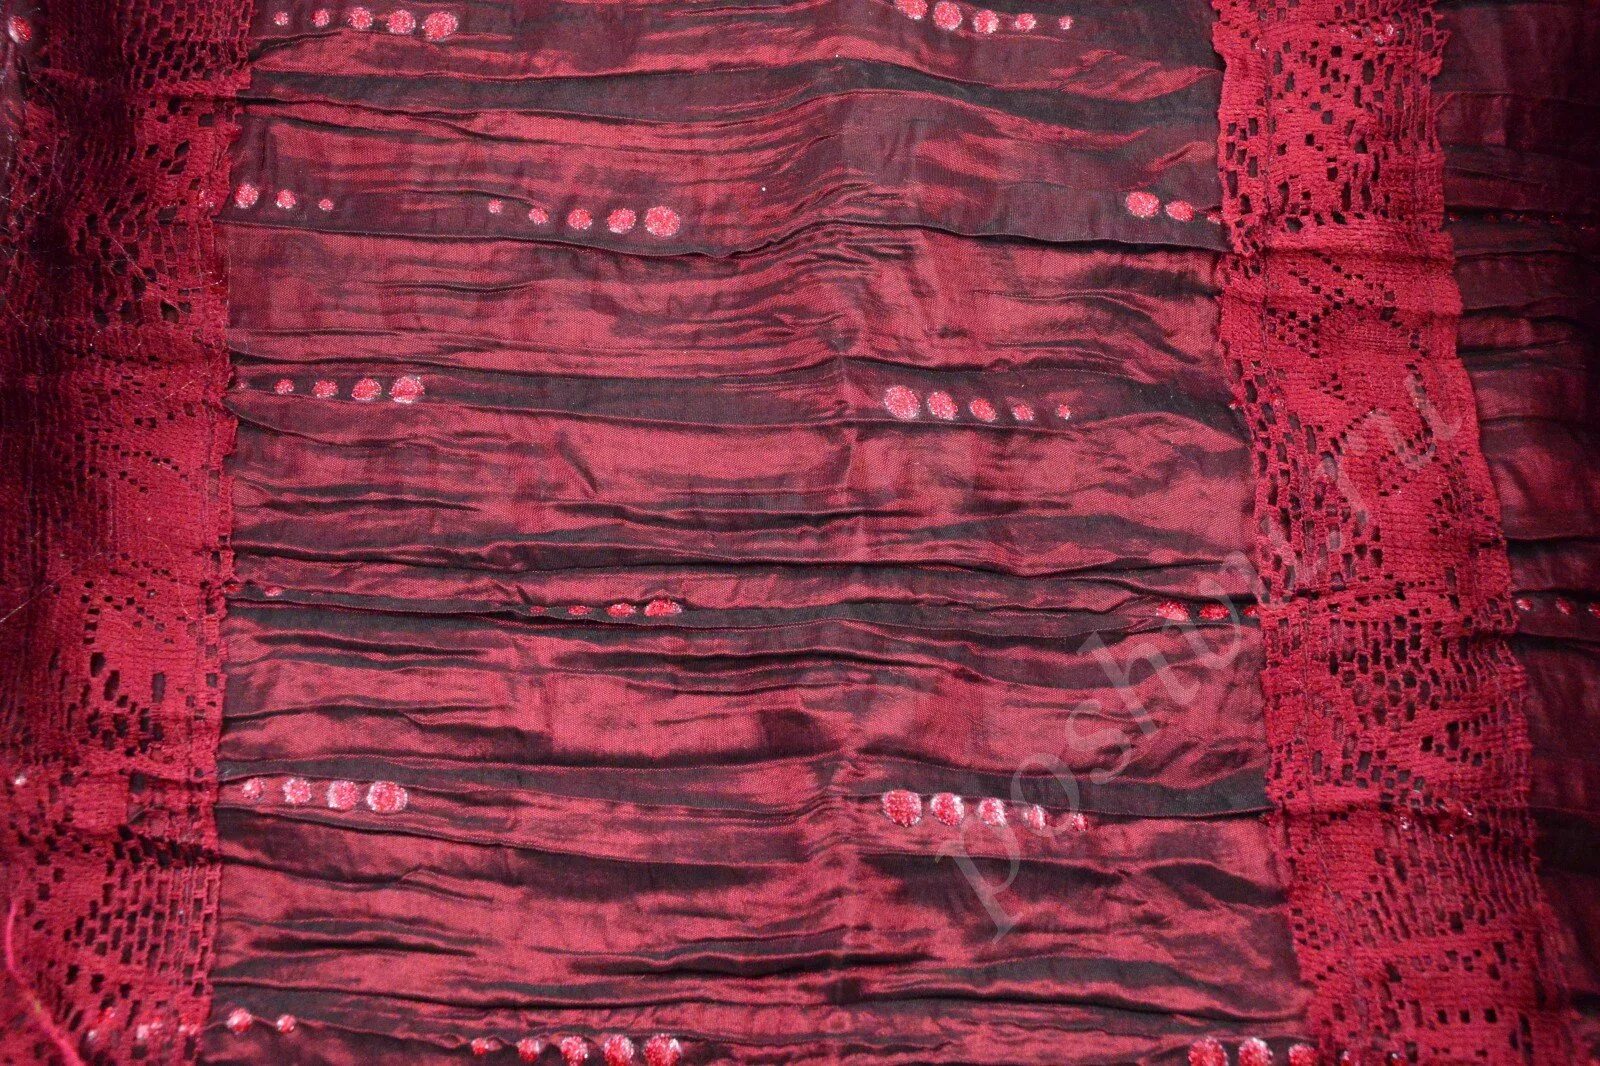 Финикия пурпурные ткани. Ткань пурпур в Финикии. Финикийский пурпур моллюски. Древняя Финикия пурпур.